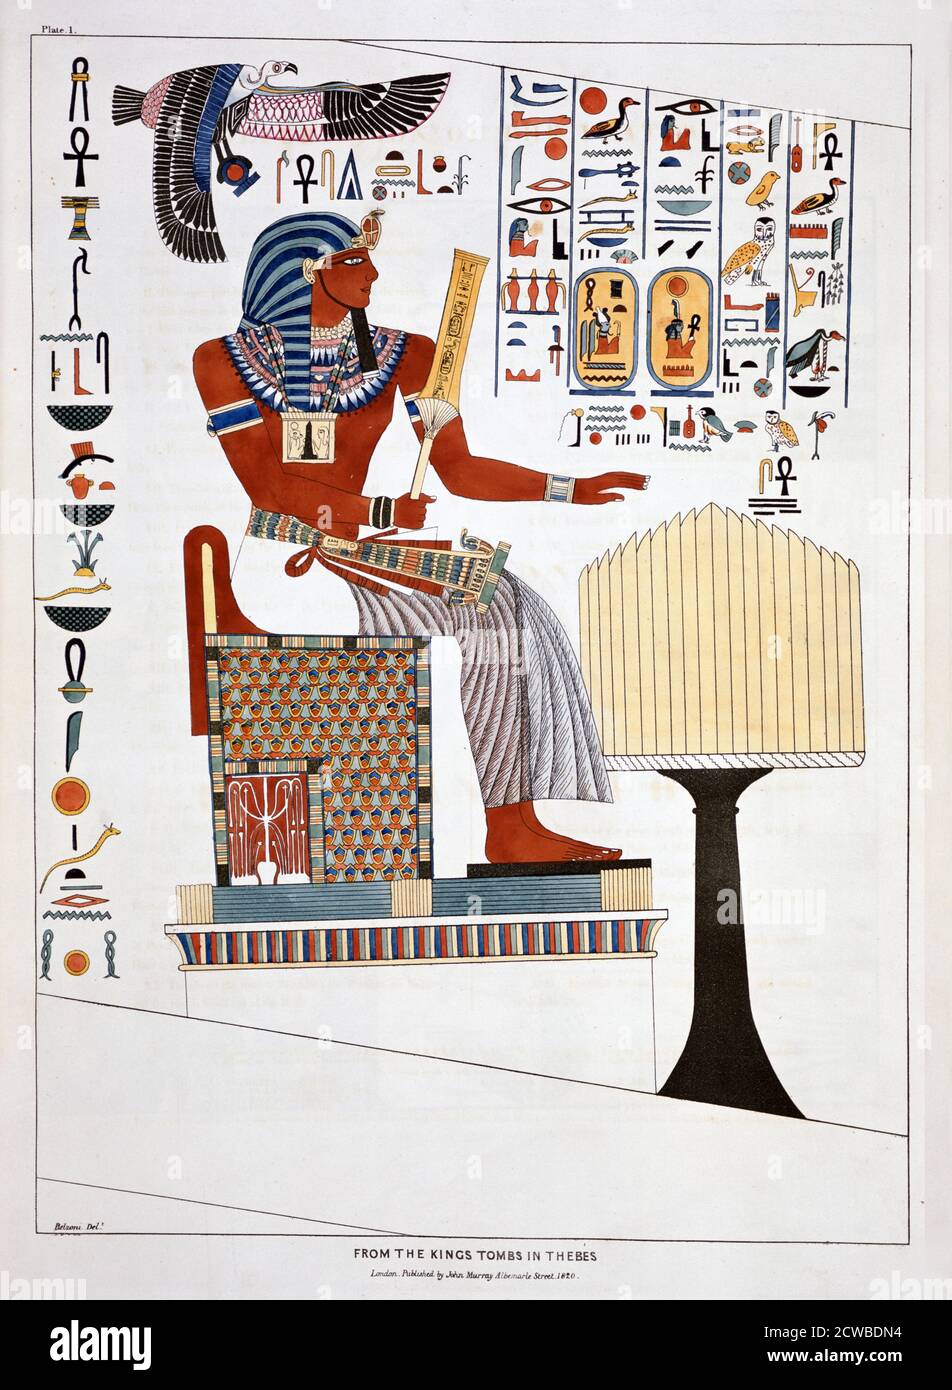 Mural de las Tumbas de Reyes en Tebas, 1820. Una placa de placas ilustrativas de las investigaciones en Egipto y Nubia. Se encuentra en la colección del Museo Británico de Londres. Por el artista italiano Giovanni Battista Belzoni. Foto de stock